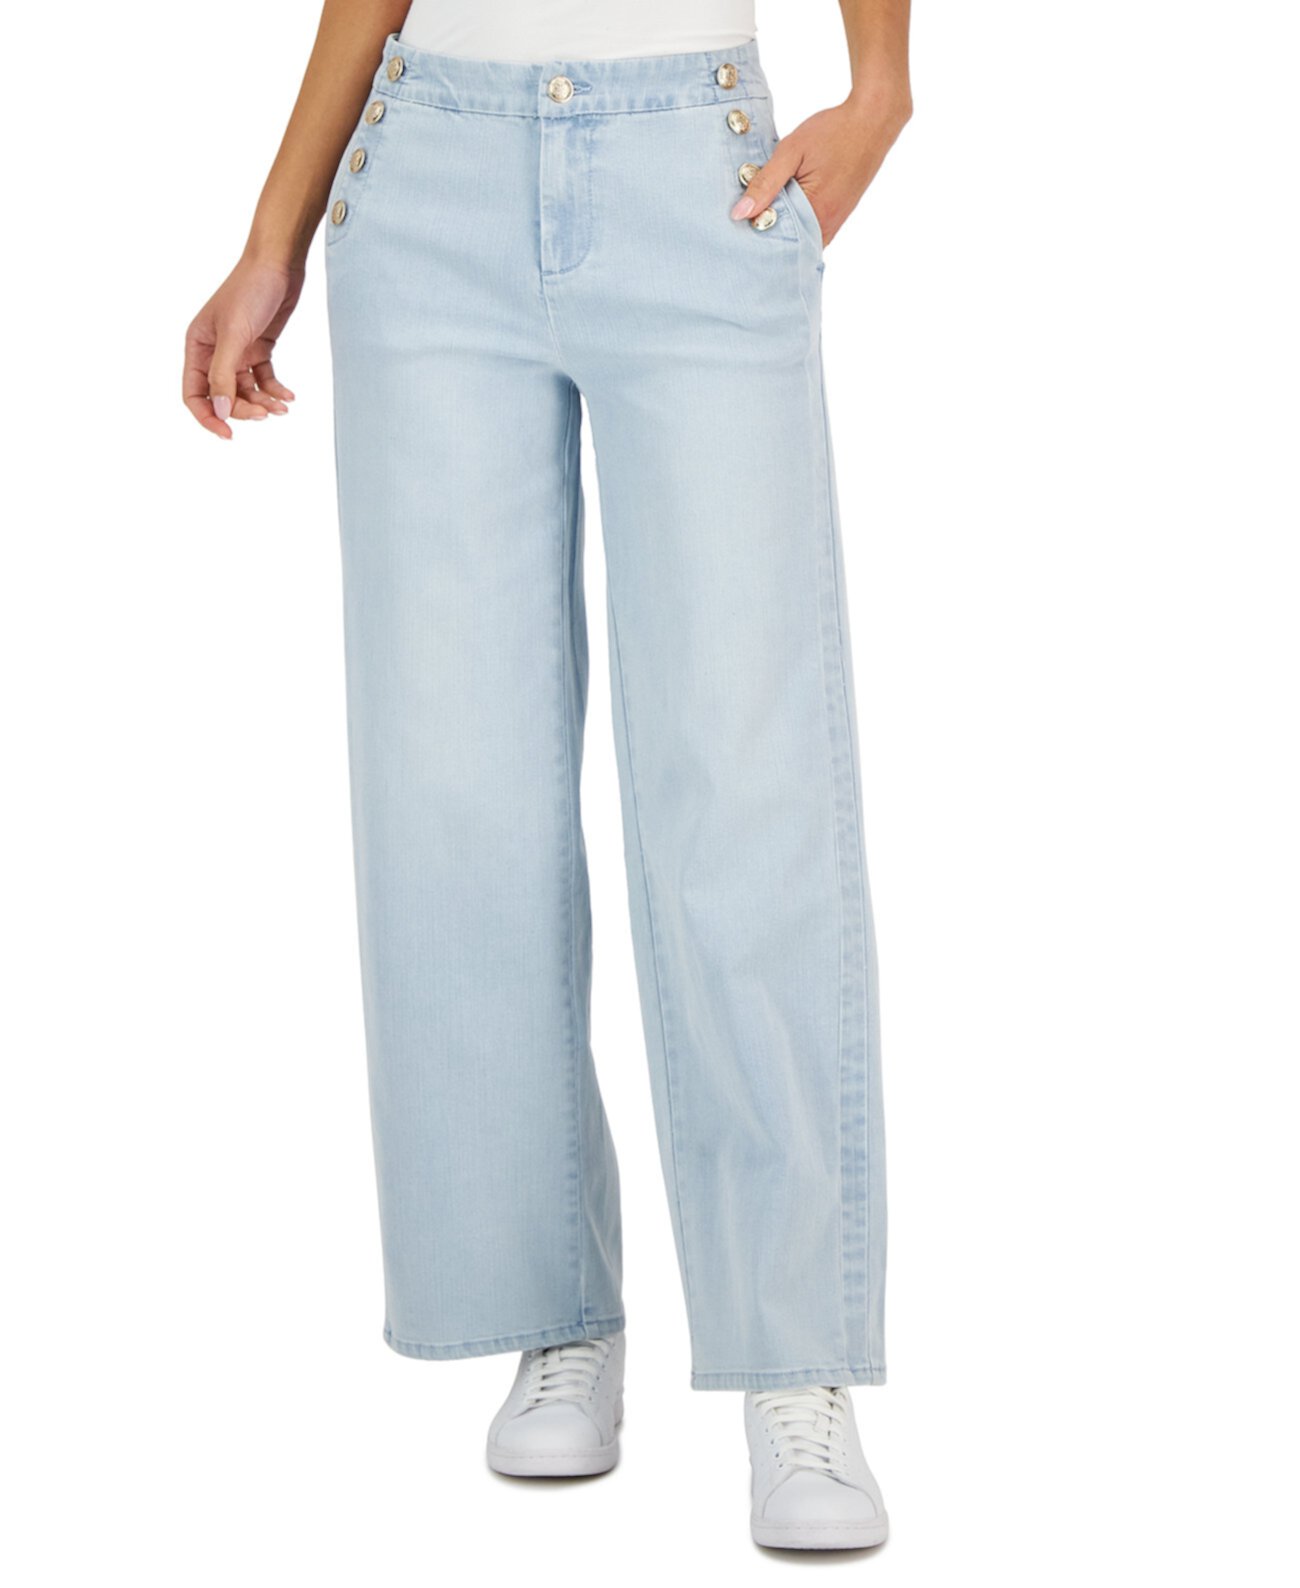 Широкие джинсы Petite Sailor Button, созданные для Macy's Charter Club